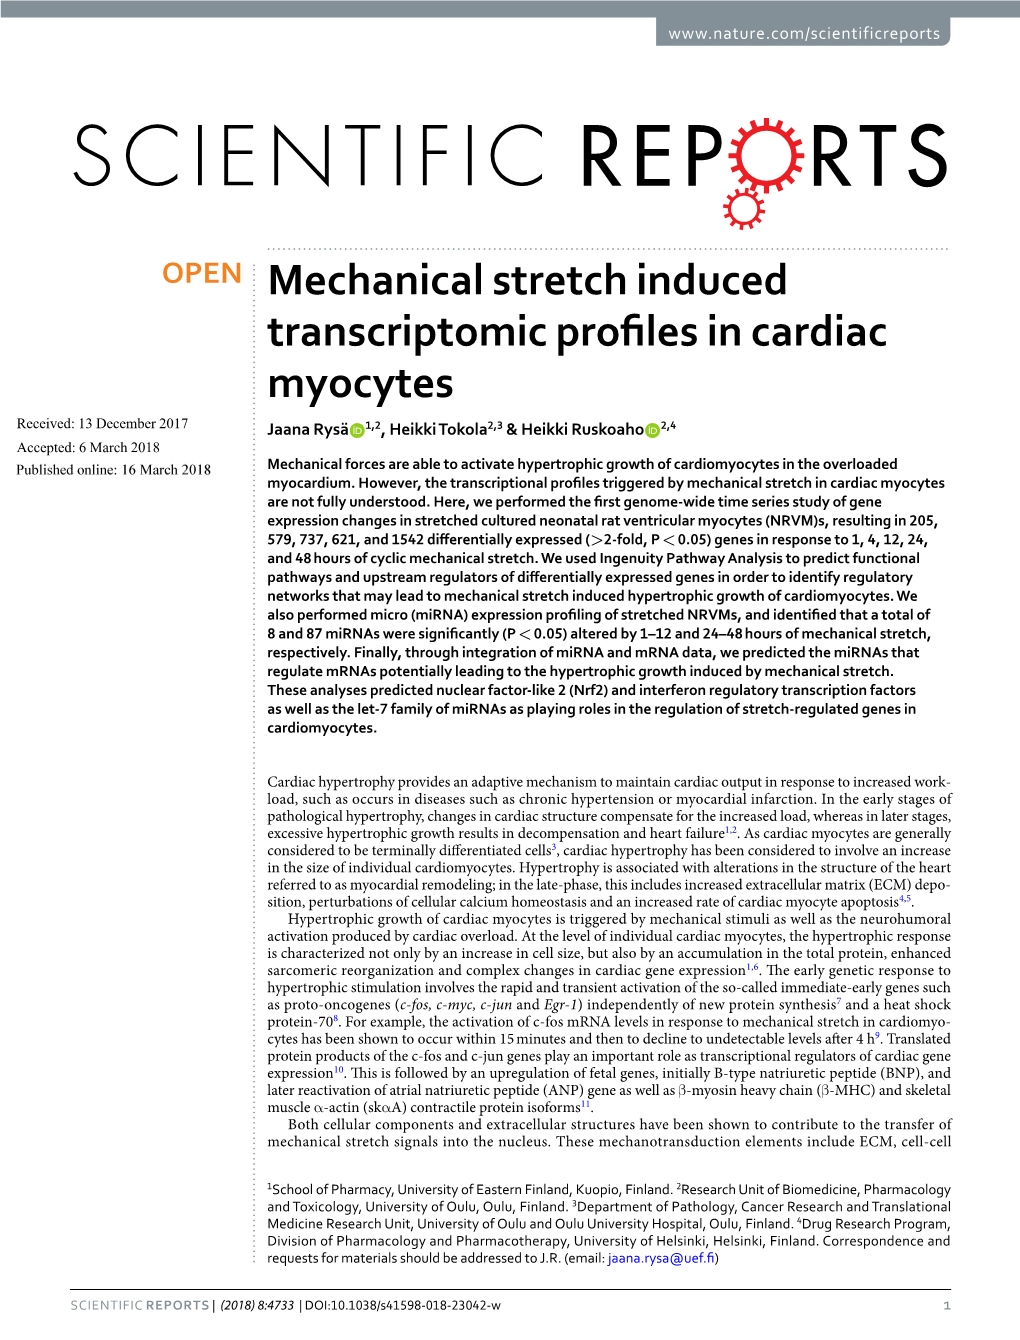 Mechanical Stretch Induced Transcriptomic Profiles in Cardiac Myocytes